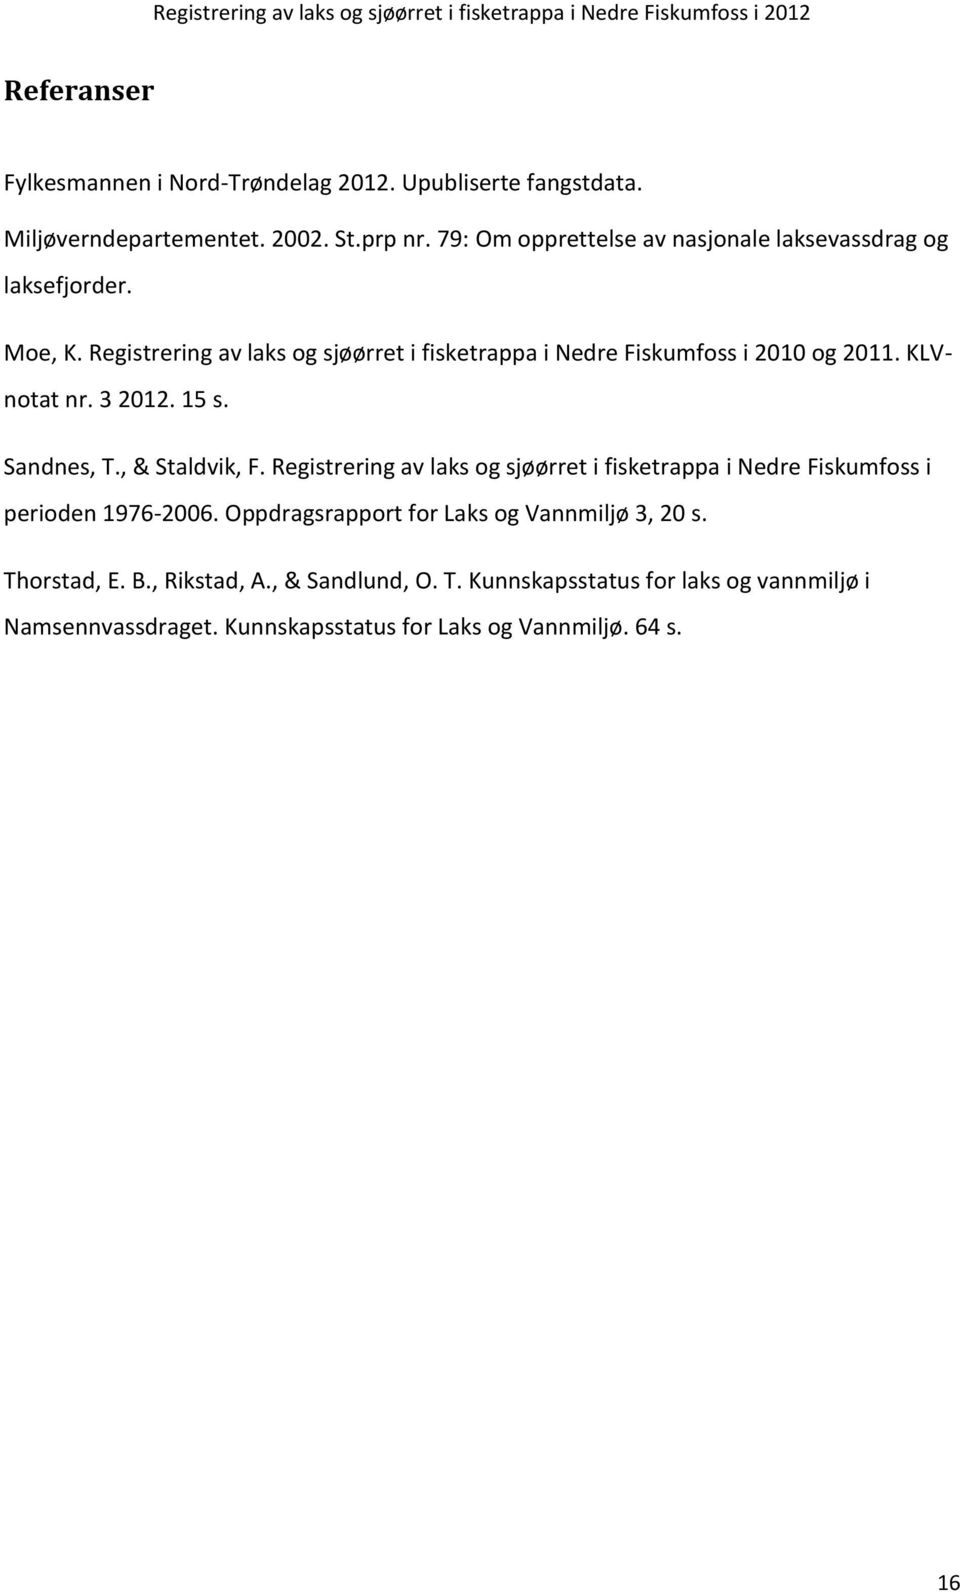 KLVnotat nr. 3 2012. 15 s. Sandnes, T., & Staldvik, F. Registrering av laks og sjøørret i fisketrappa i Nedre Fiskumfoss i perioden 1976-2006.